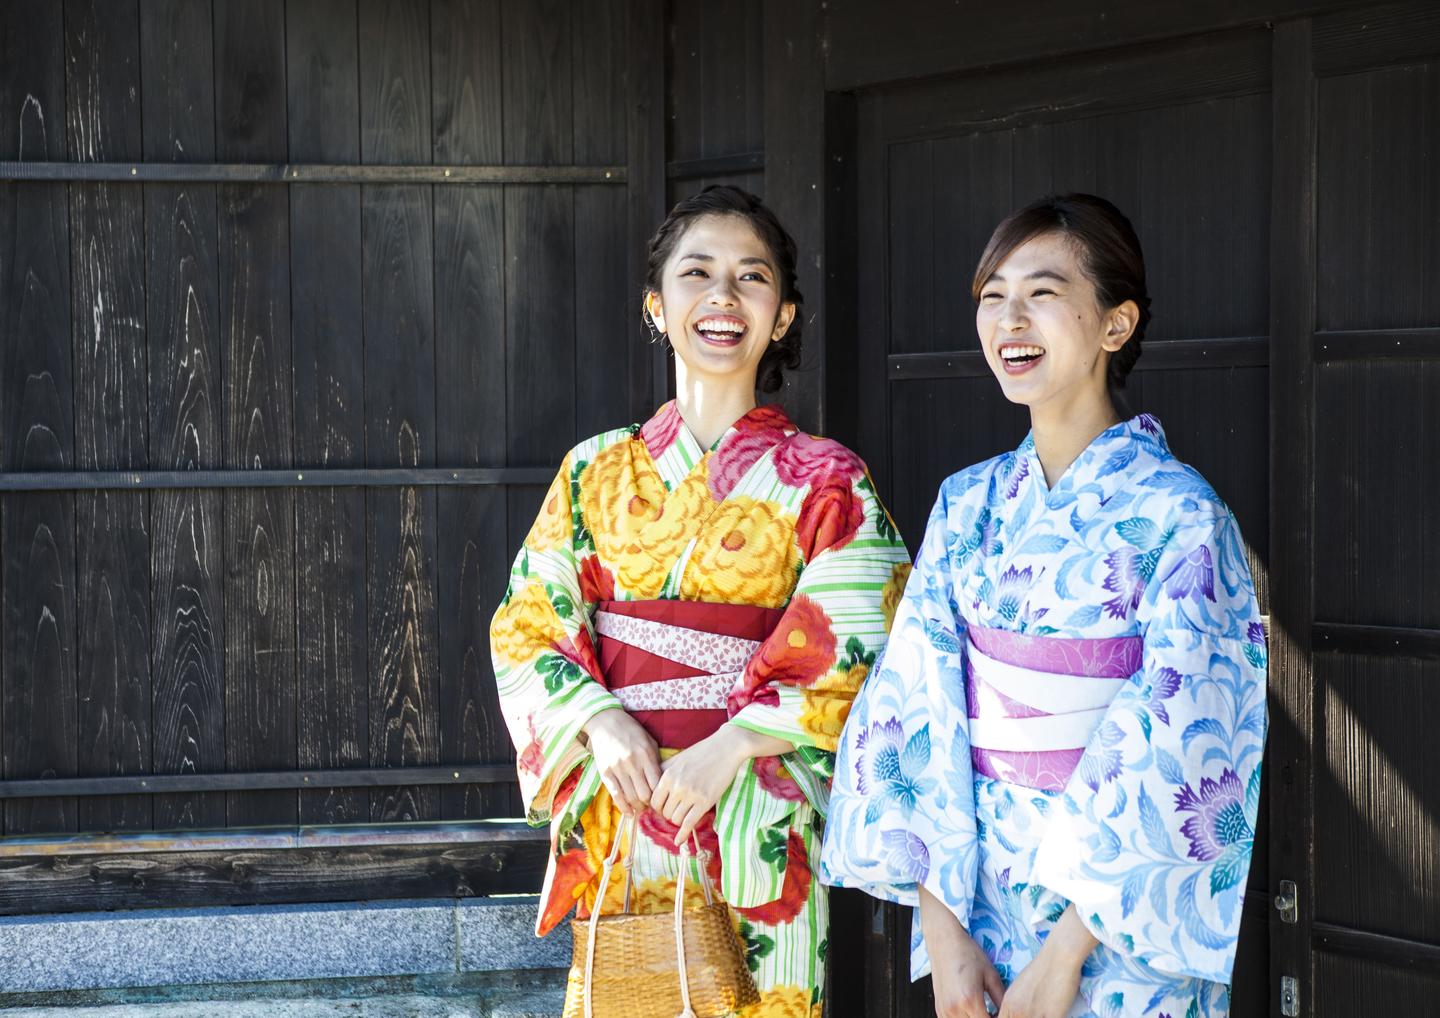 기모노와 유카타의 차이점은? 기모노 입는 법이나 소재, 용도 등으로 자세하게 해설│Karuta - 즐겁게 일본을 배우자